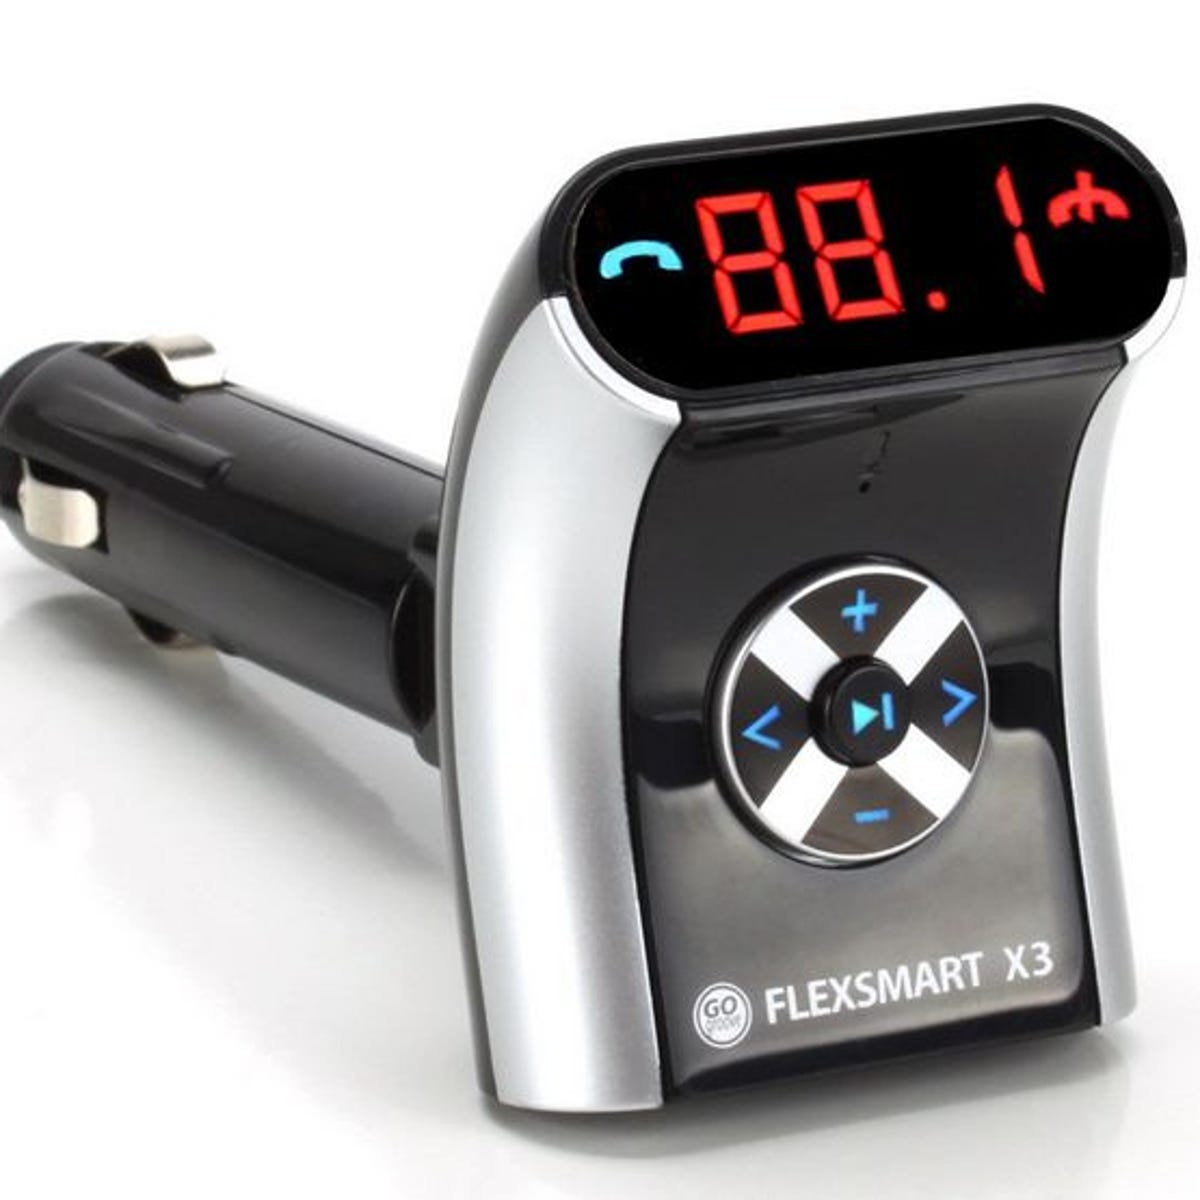 Get a GoGroove FlexSmart X3 Bluetooth FM transmitter for $39.99 shipped -  CNET